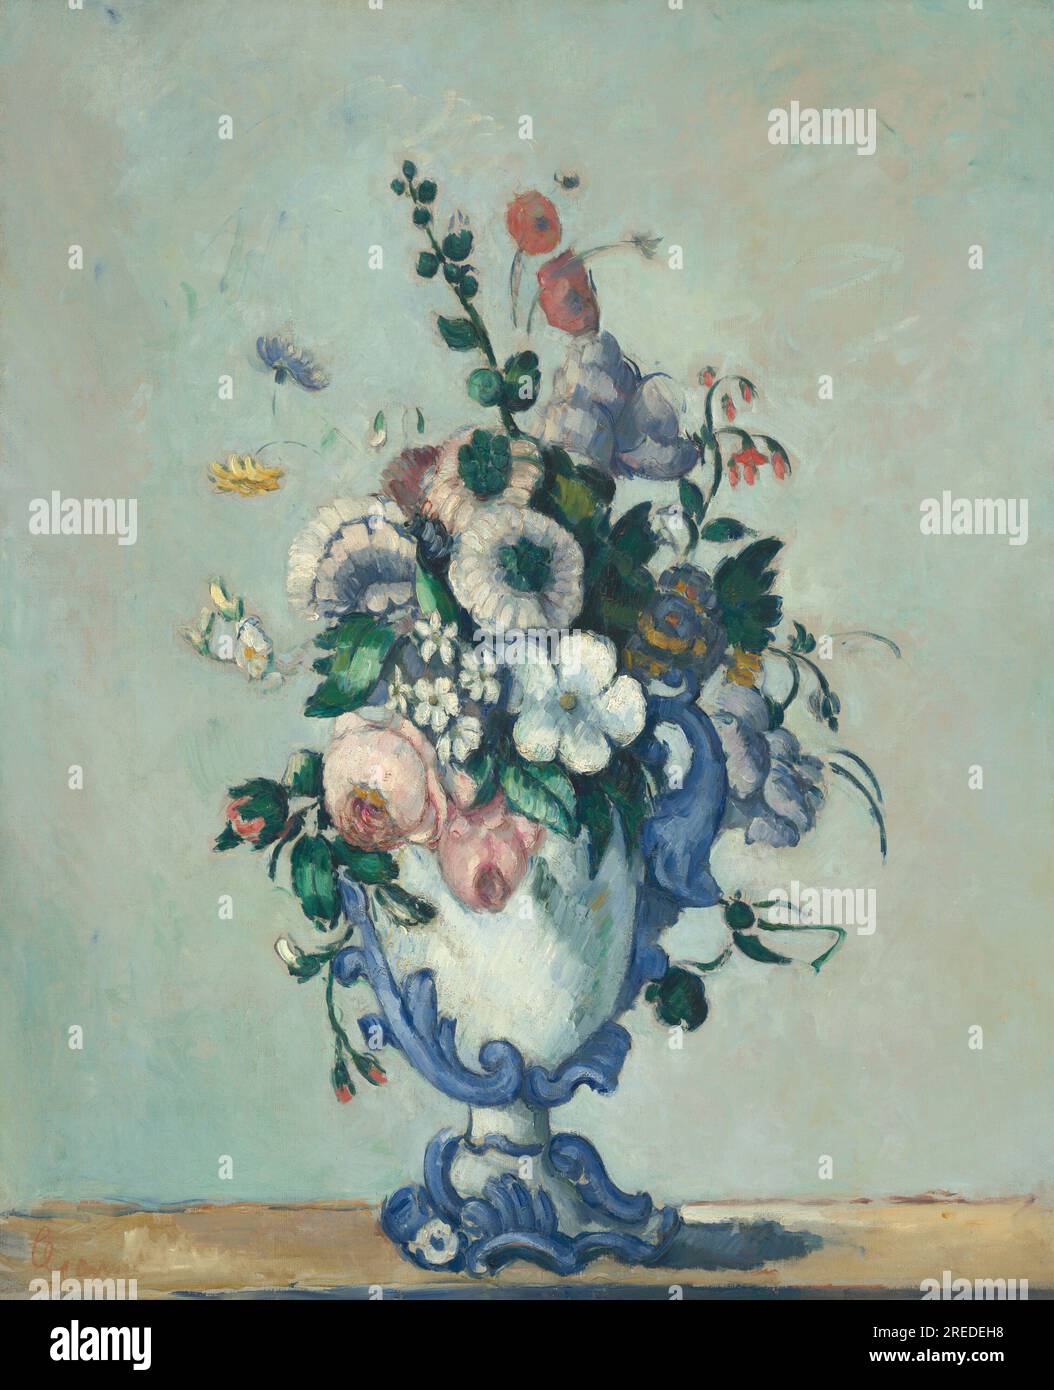 Titre : fleurs dans un vase rococo Créateur : Paul Cézanne Date : 1873 Dimensions : 73 x 59,8 cm support : huile sur toile lieu : National Gallery of Art, Washington, D.C. Banque D'Images